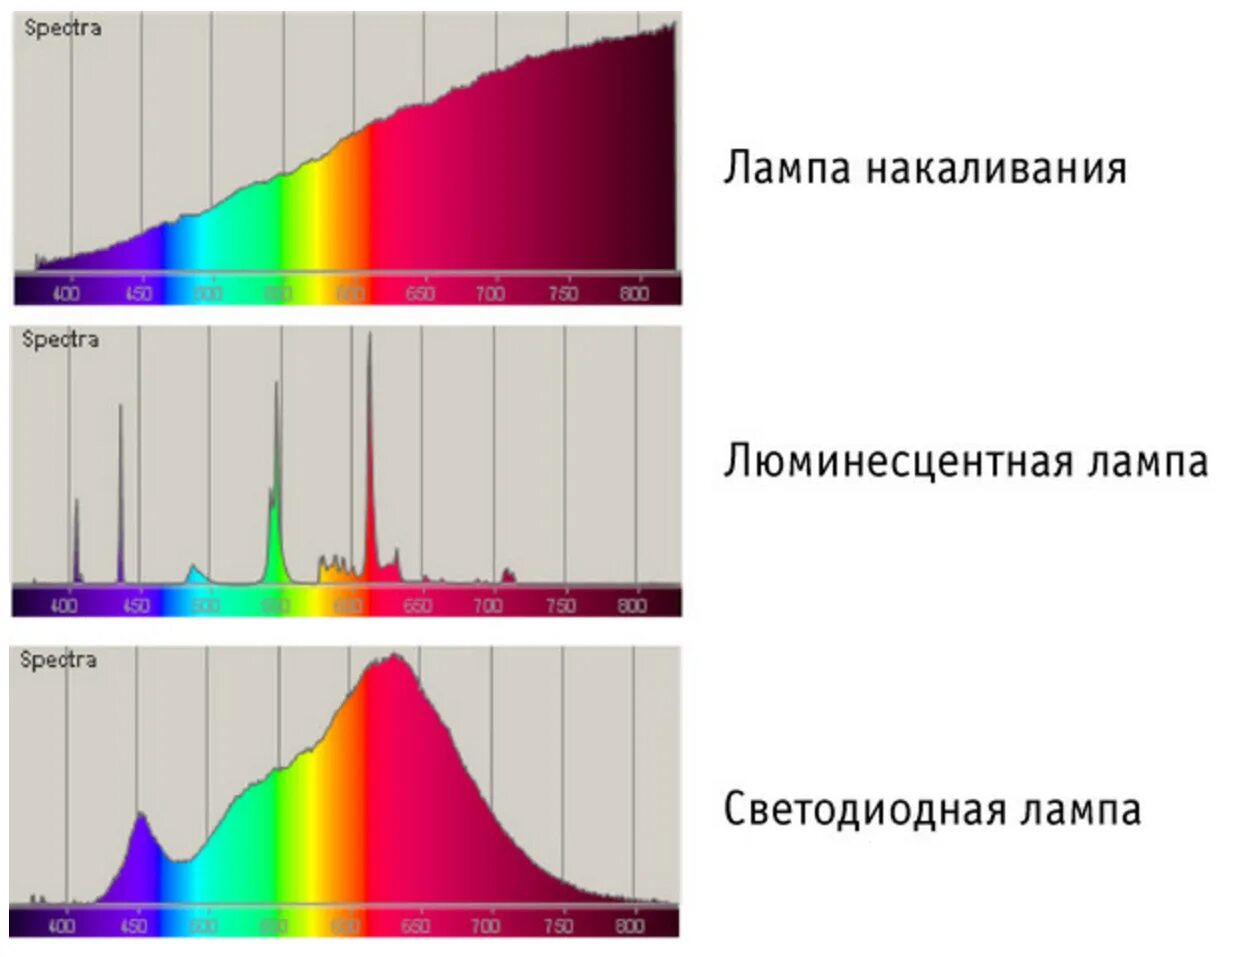 Шаровый спектр. Спектр лампы накаливания 100 ватт. Спектр люминесцентной лампы дневного света. Спектр светодиодной лампы 4000к. Спектр лампы дневного света через спектроскоп.